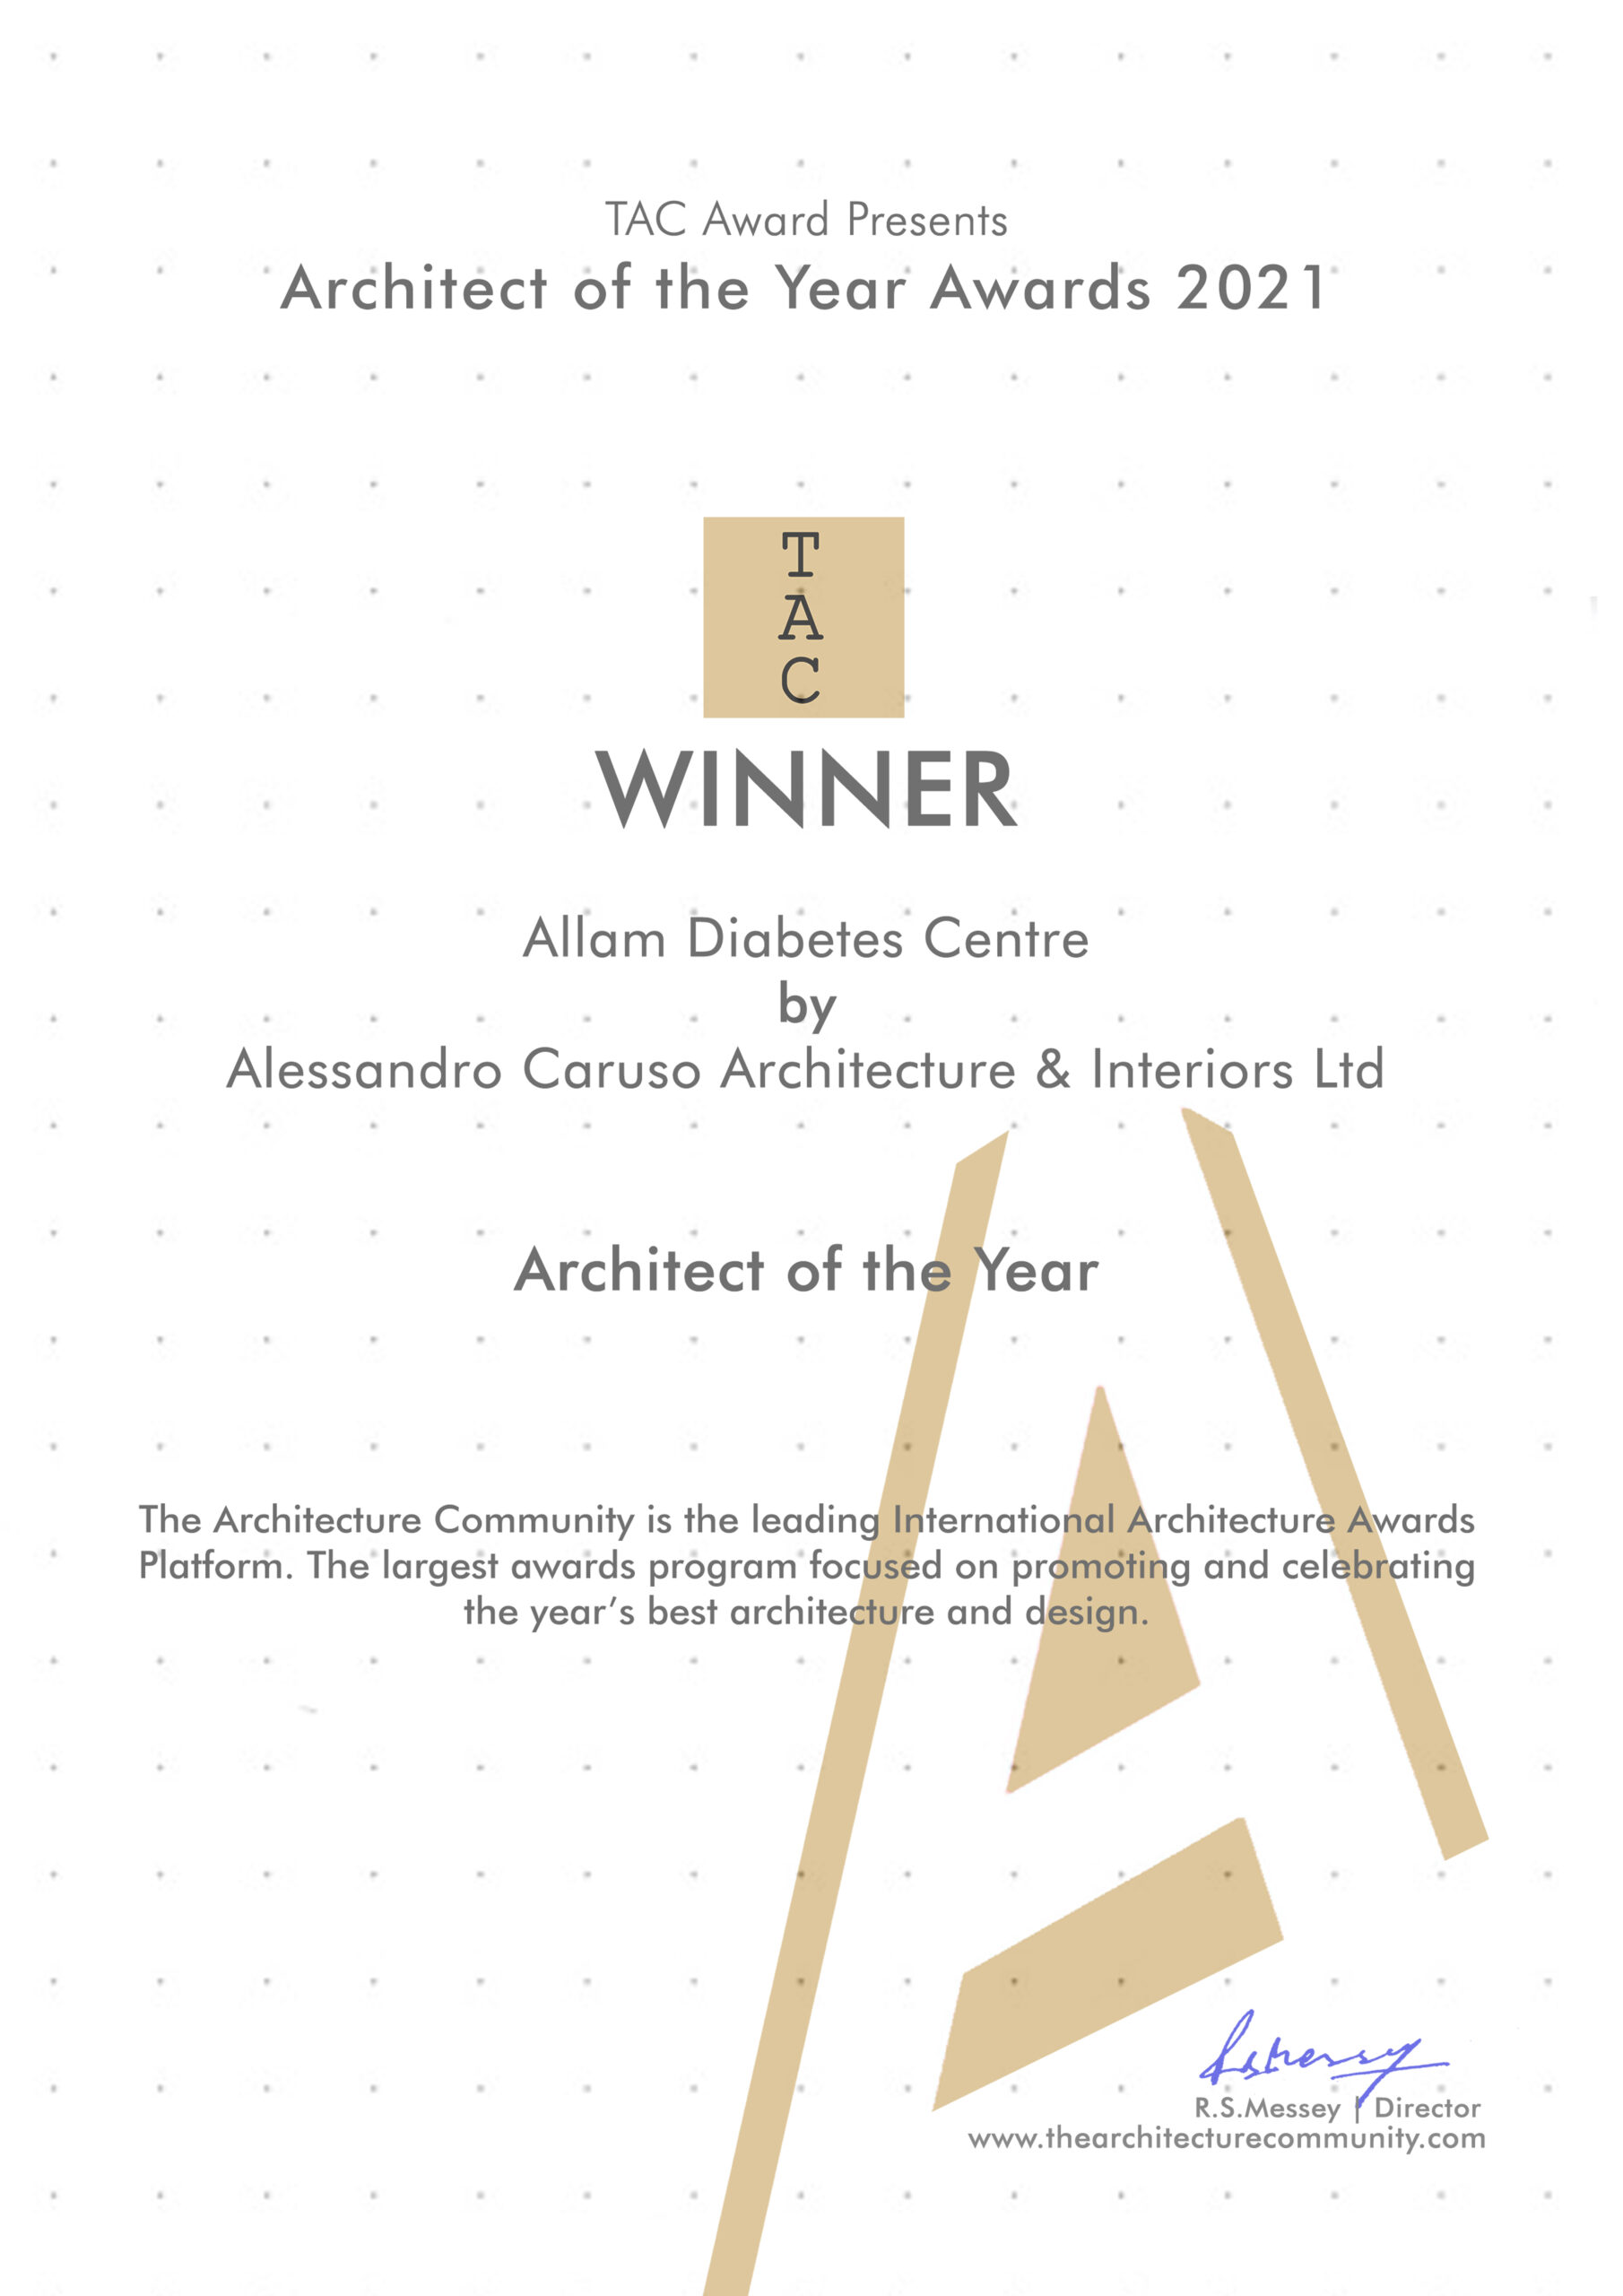 Alessandro-Caruso-Architecture-&-Interiors-Ltd